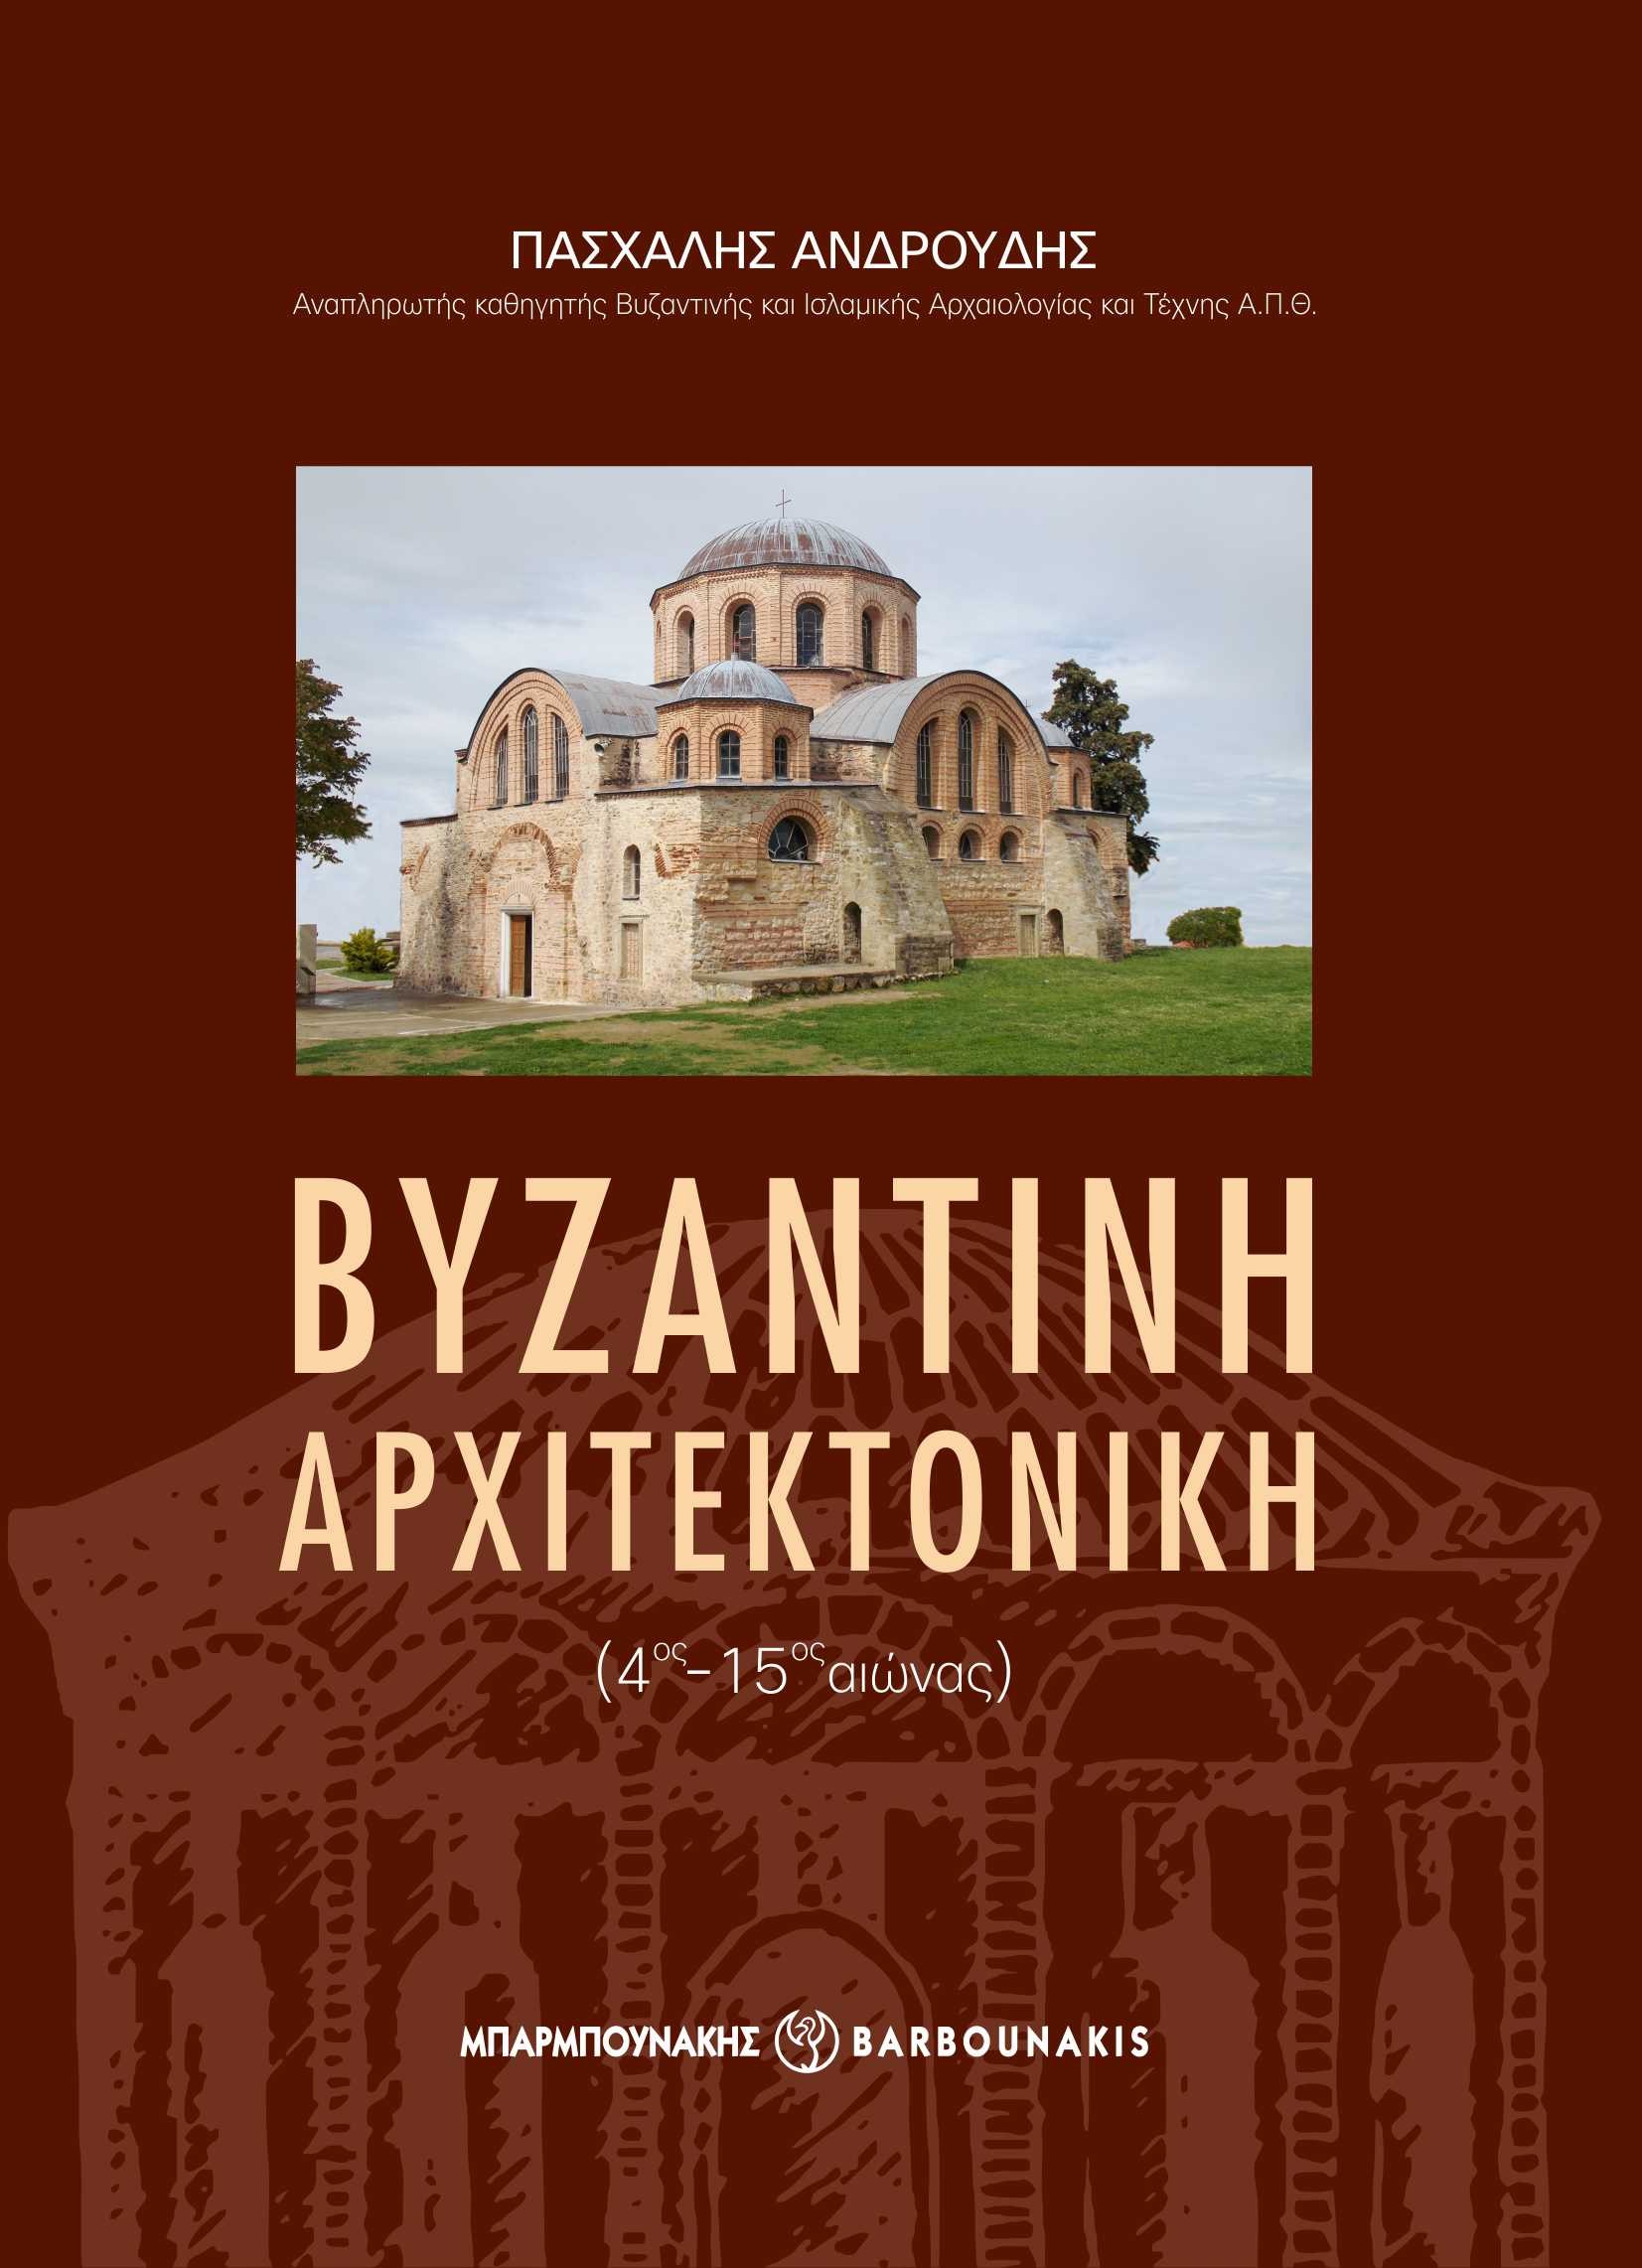 Βυζαντινή αρχιτεκτονική (4ος-15ος αιώνας)